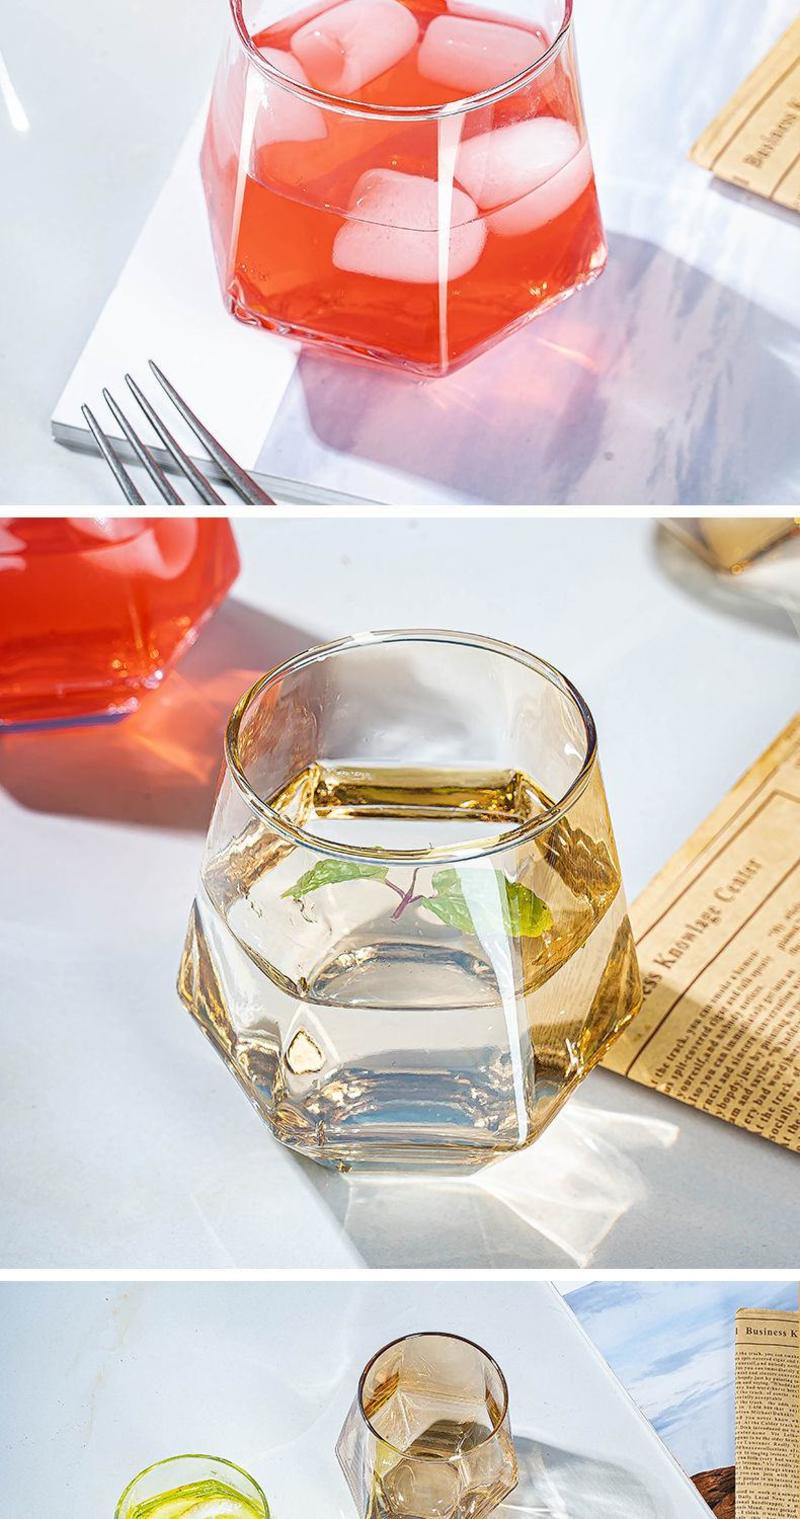 玻璃水杯子家用冷水壶套装创意女牛奶水杯ins风菱形个性